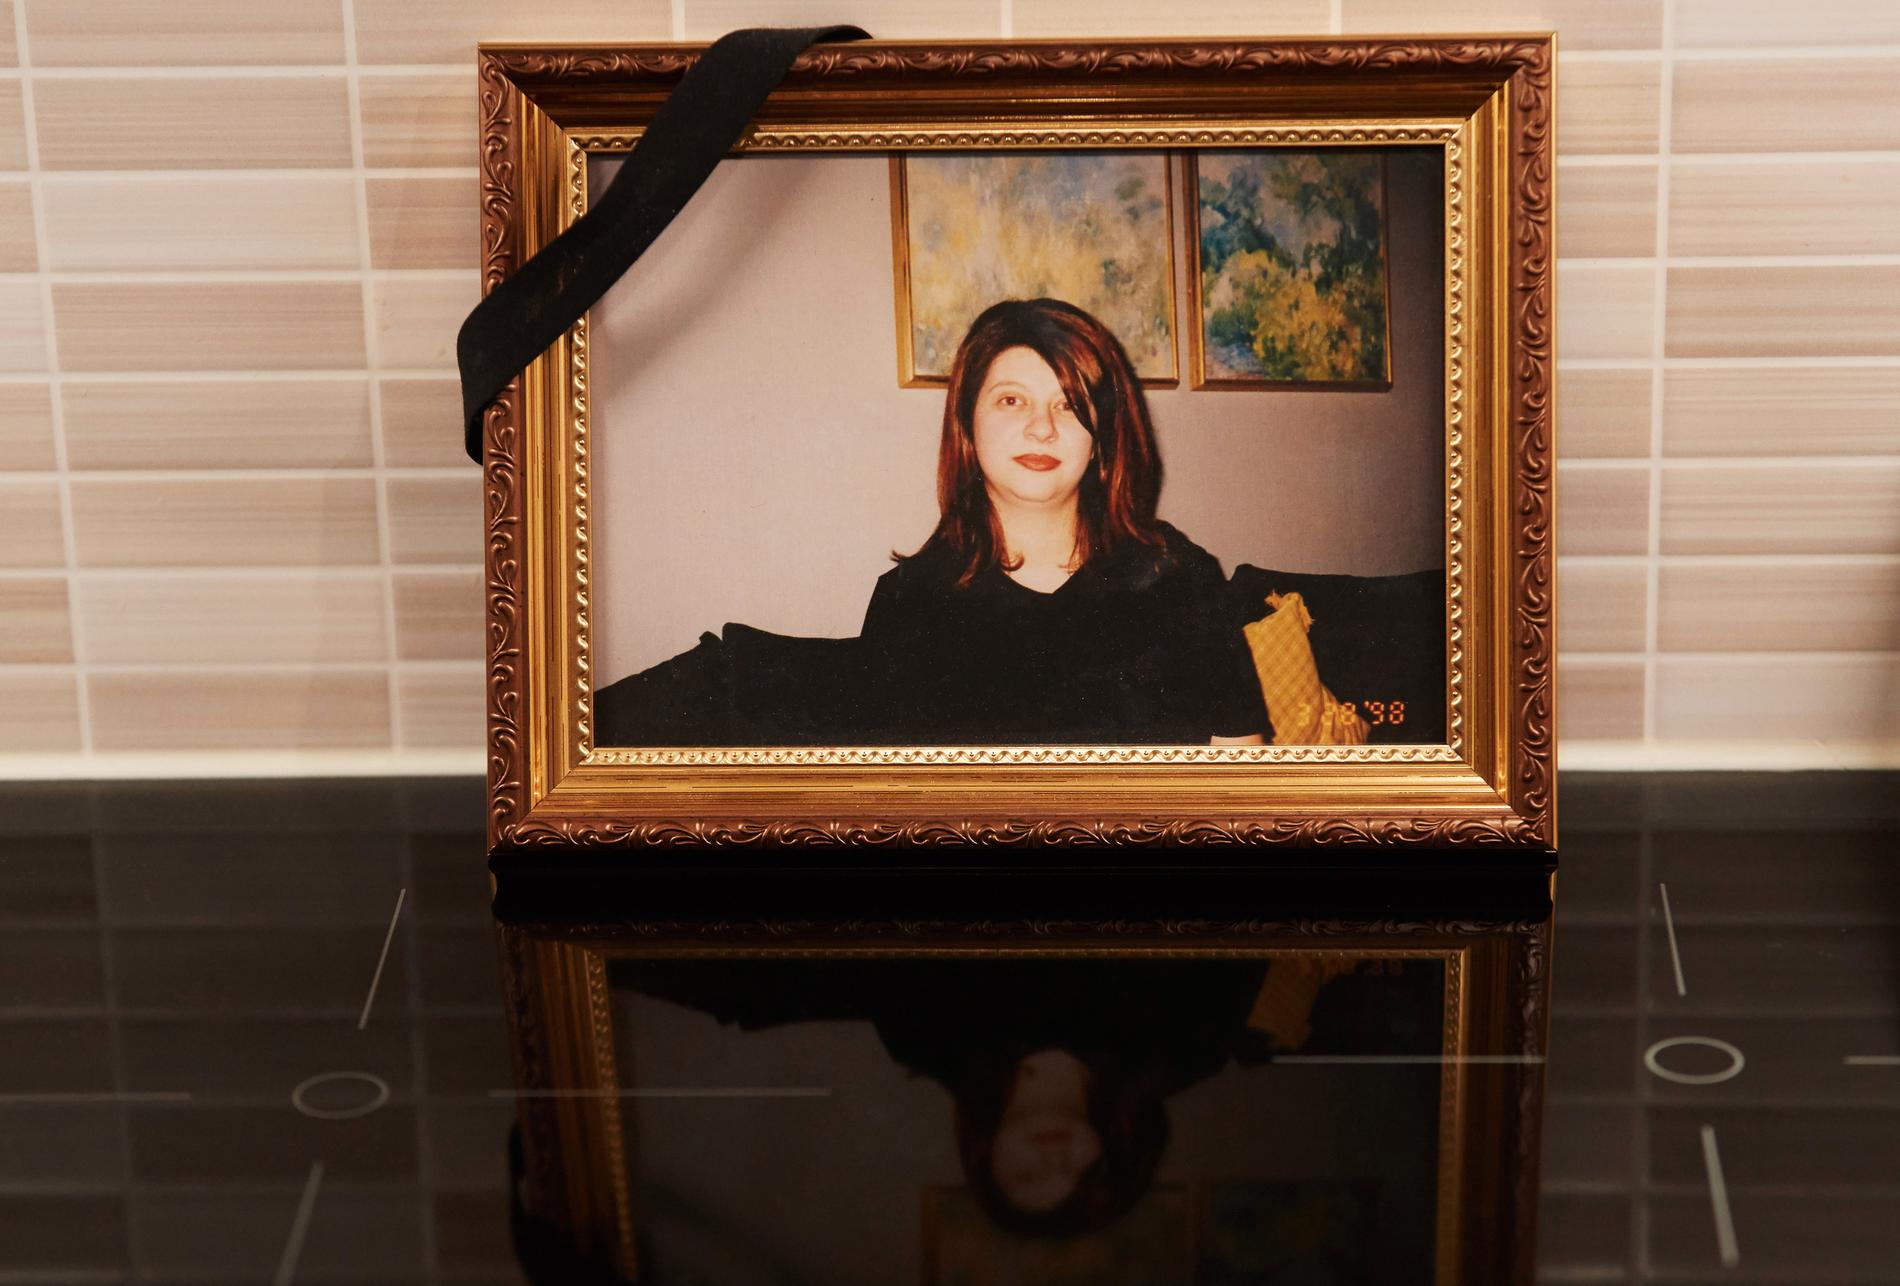 Vesna, 40, mördades av Kiro